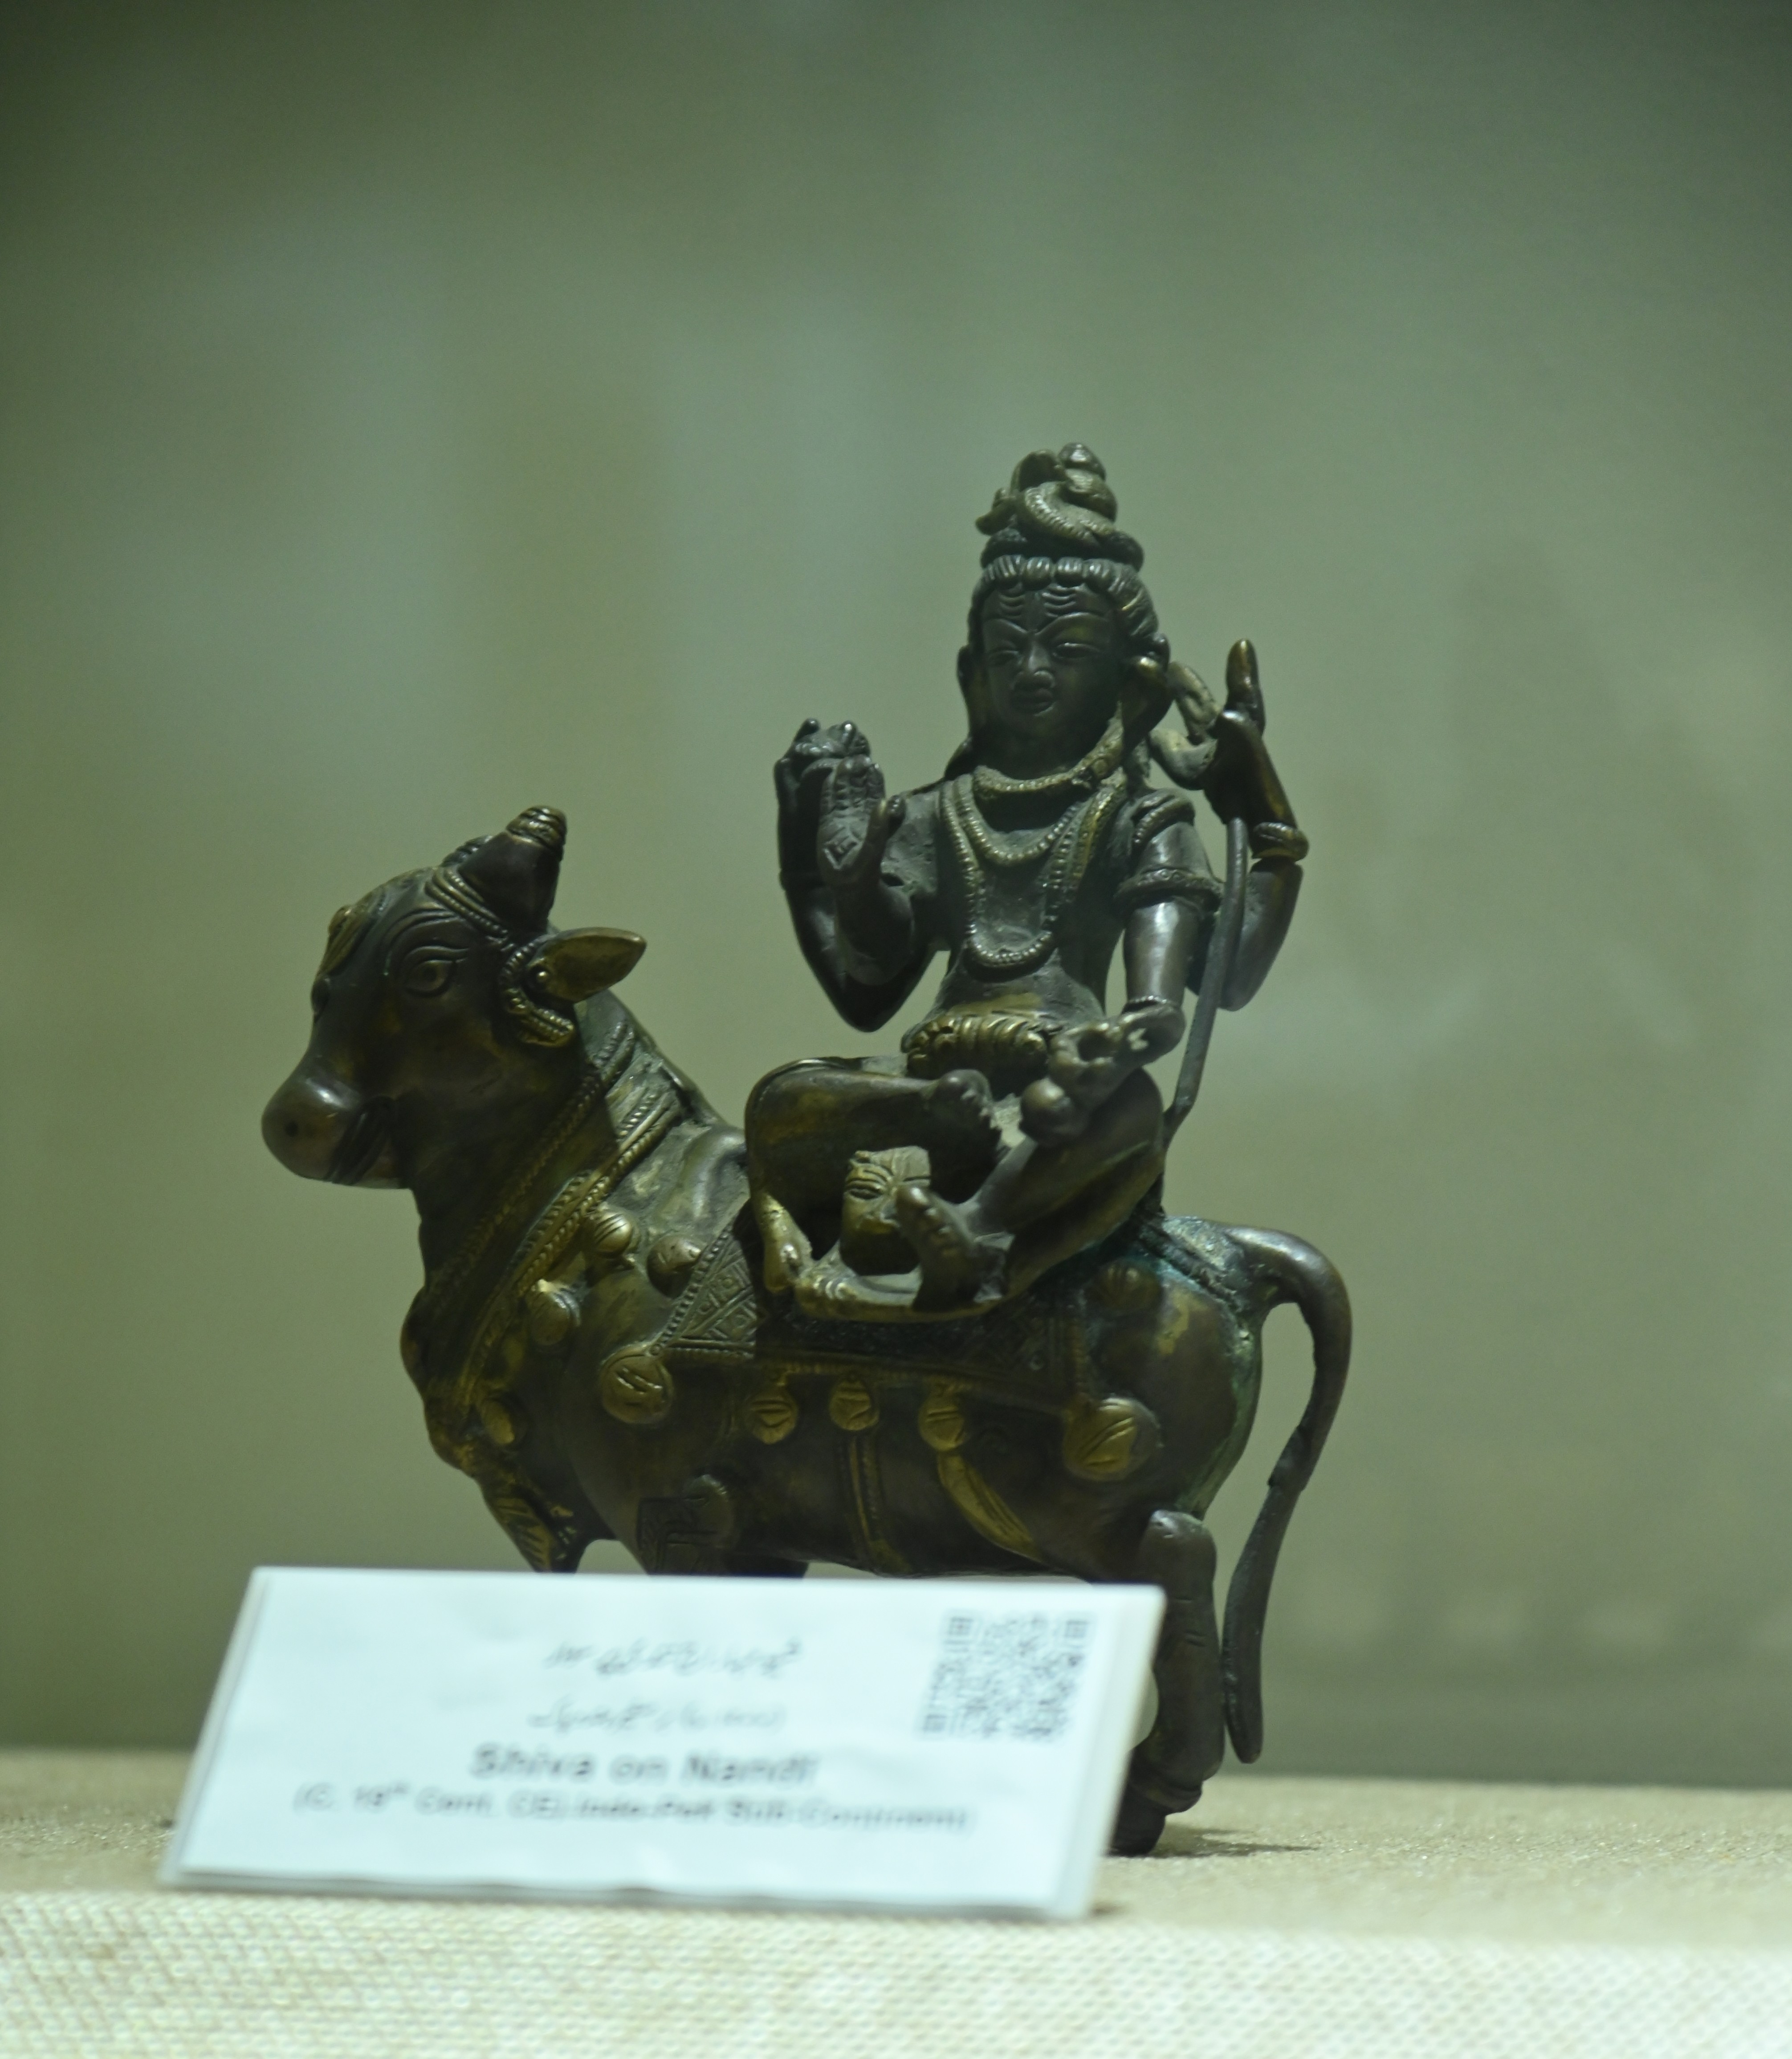 The Statue of Shiva on Nandi (the bull vahana of the Hindu God Shiva)